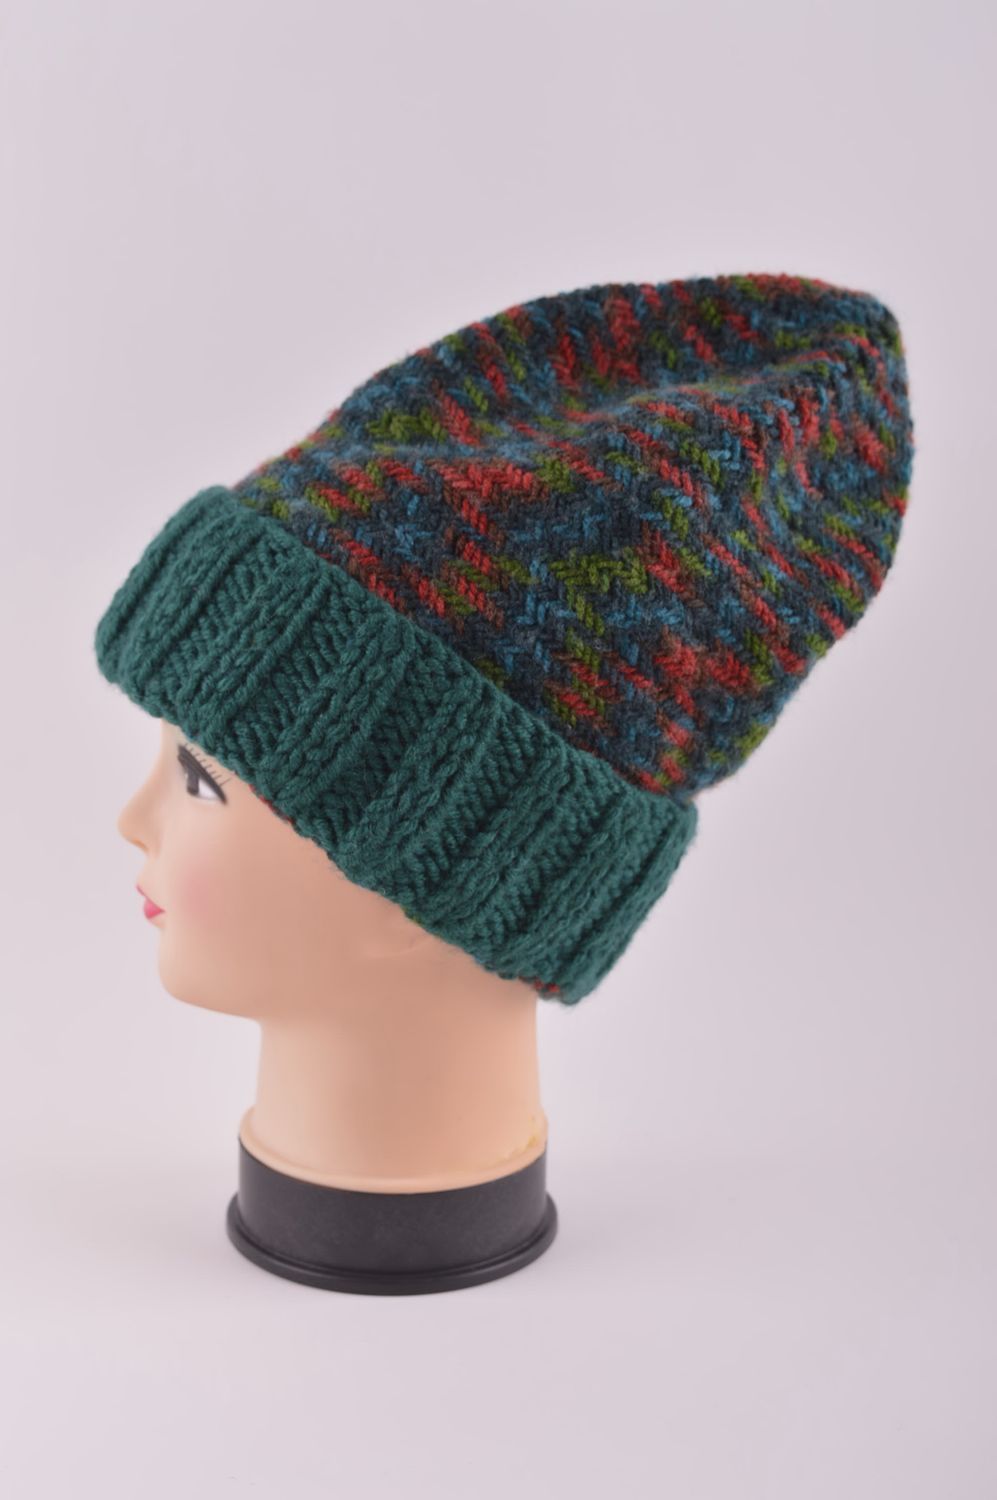 Knitted hat handmade knitted accessories warm winter hat women woolen hat photo 4